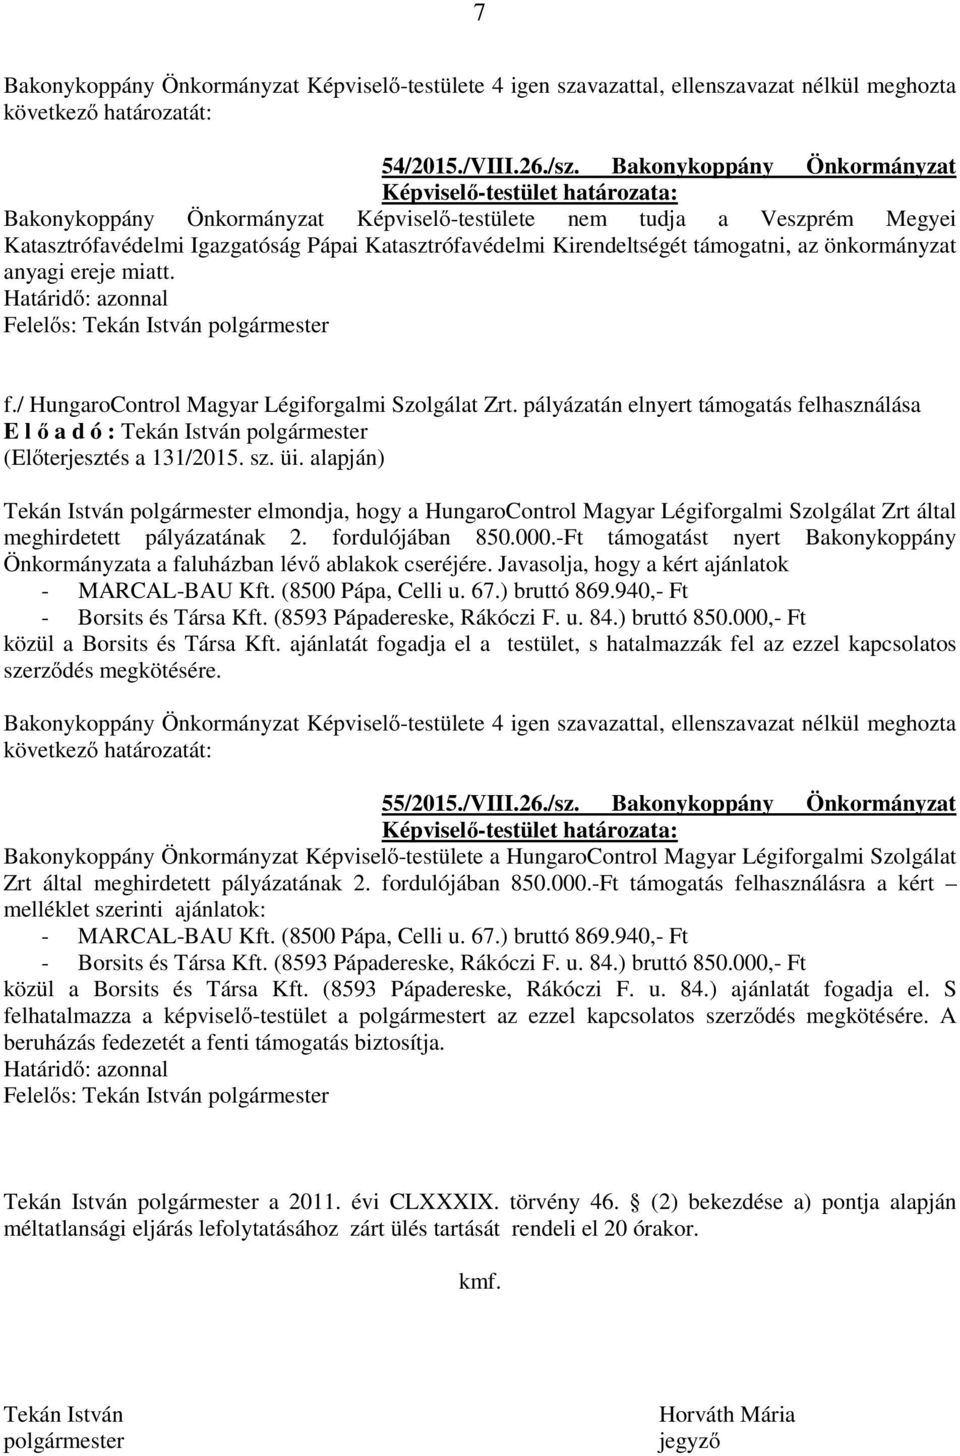 anyagi ereje miatt. f./ HungaroControl Magyar Légiforgalmi Szolgálat Zrt. pályázatán elnyert támogatás felhasználása (Előterjesztés a 131/2015. sz. üi.